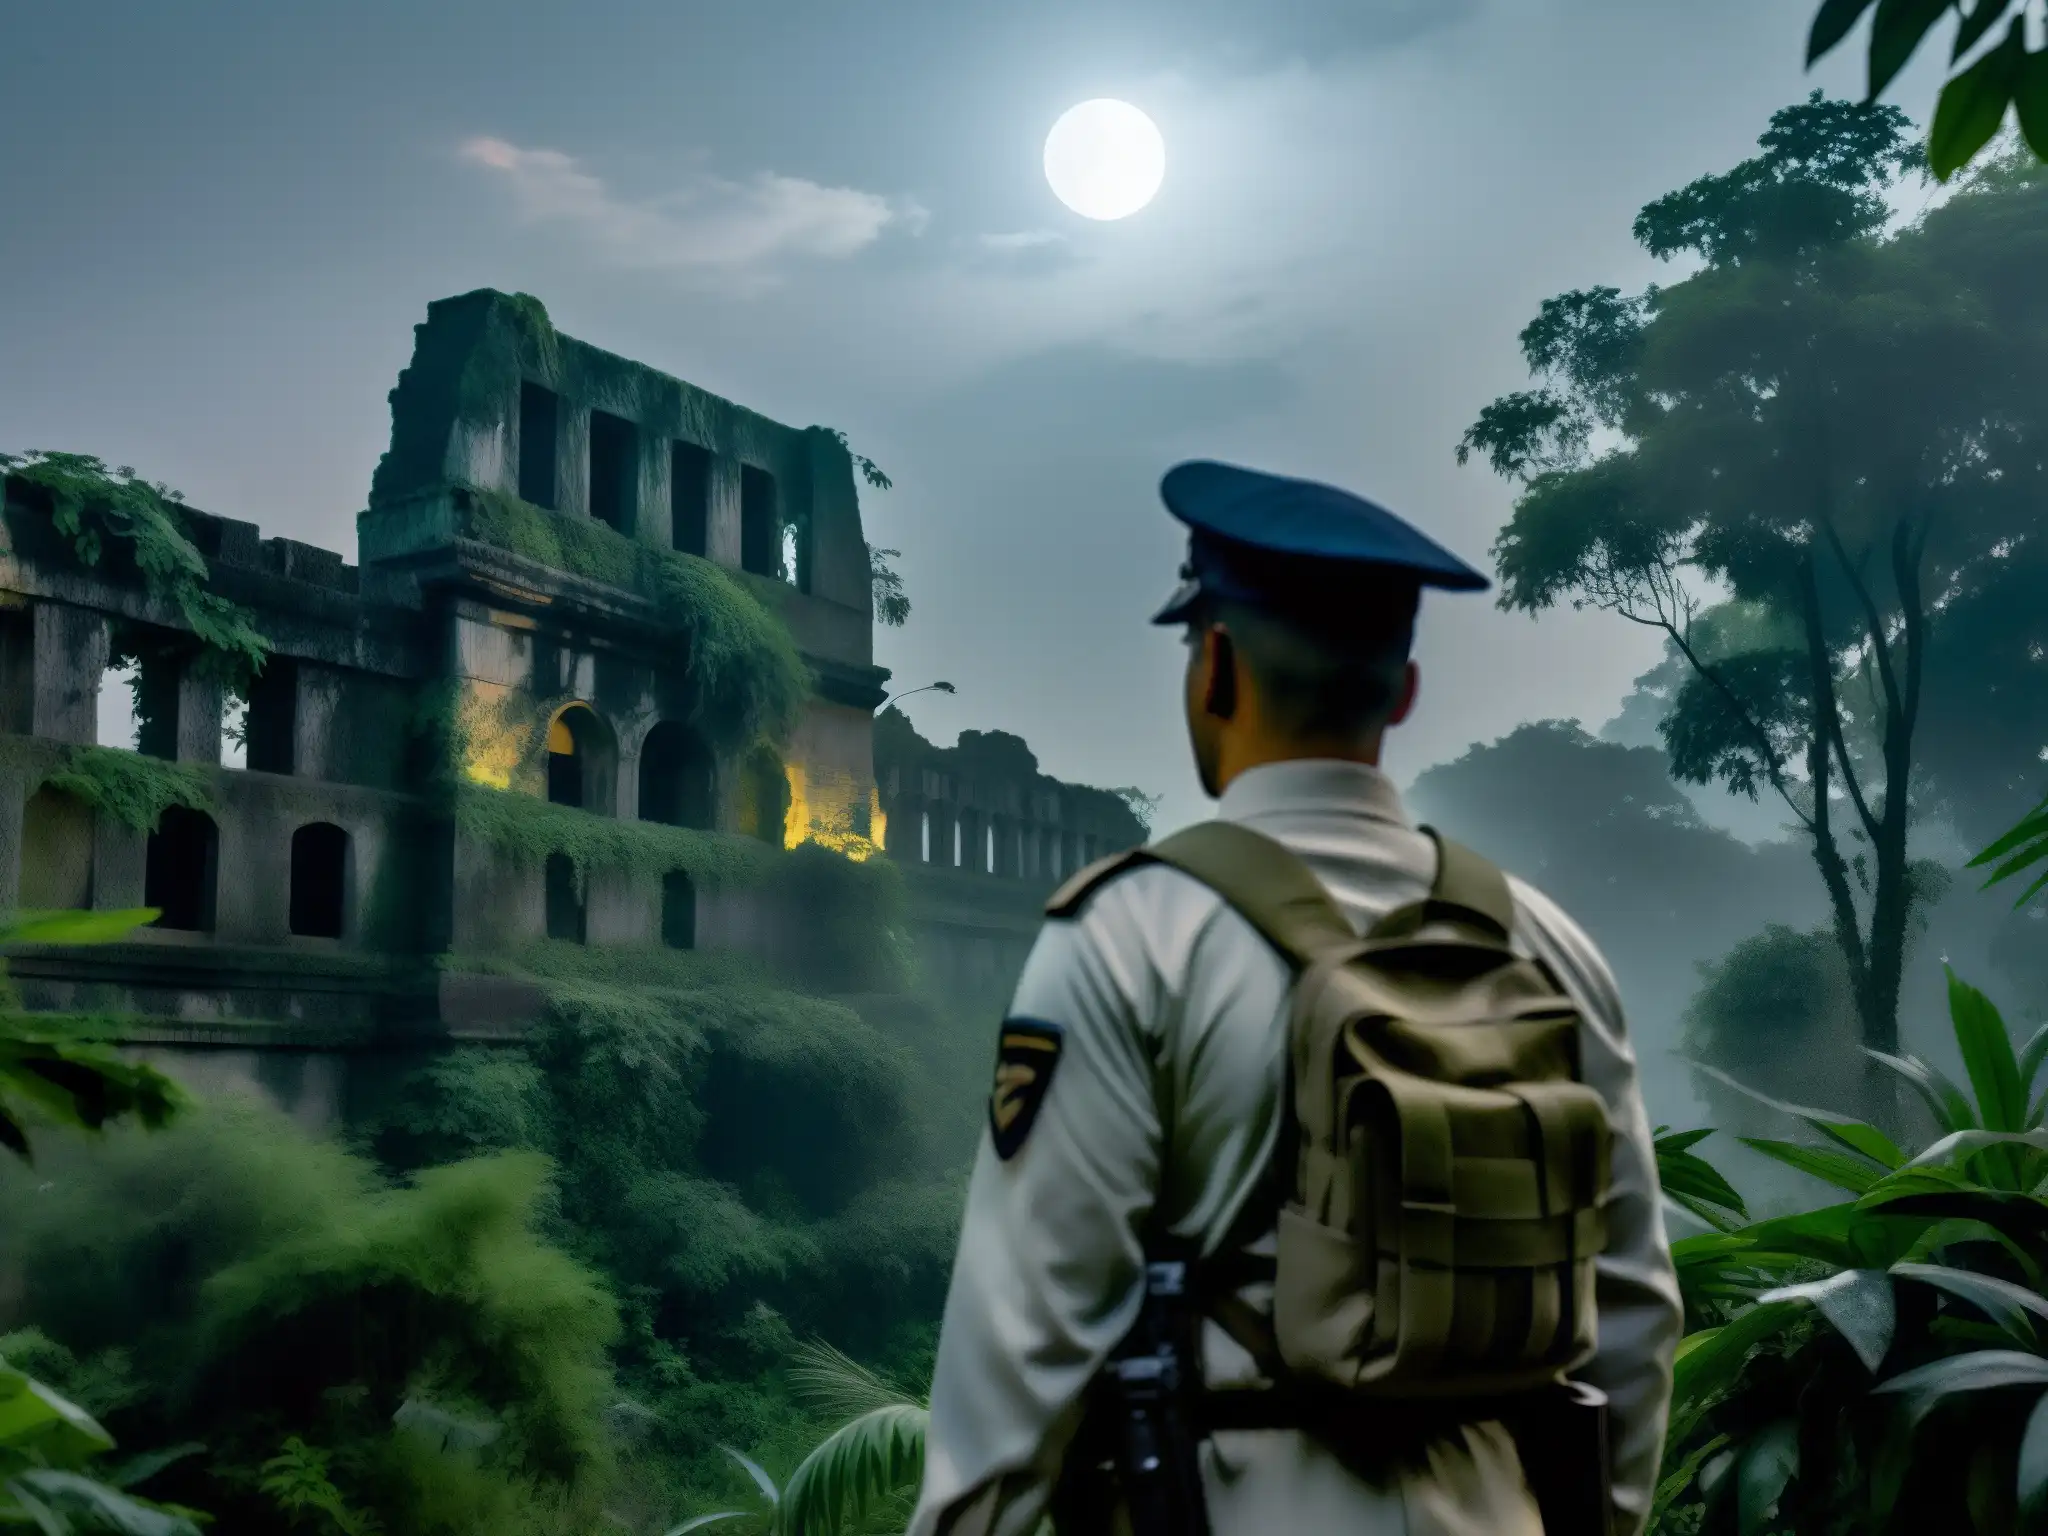 Soldado misterioso en la selva india, con ruinas antiguas entre la niebla y la vegetación